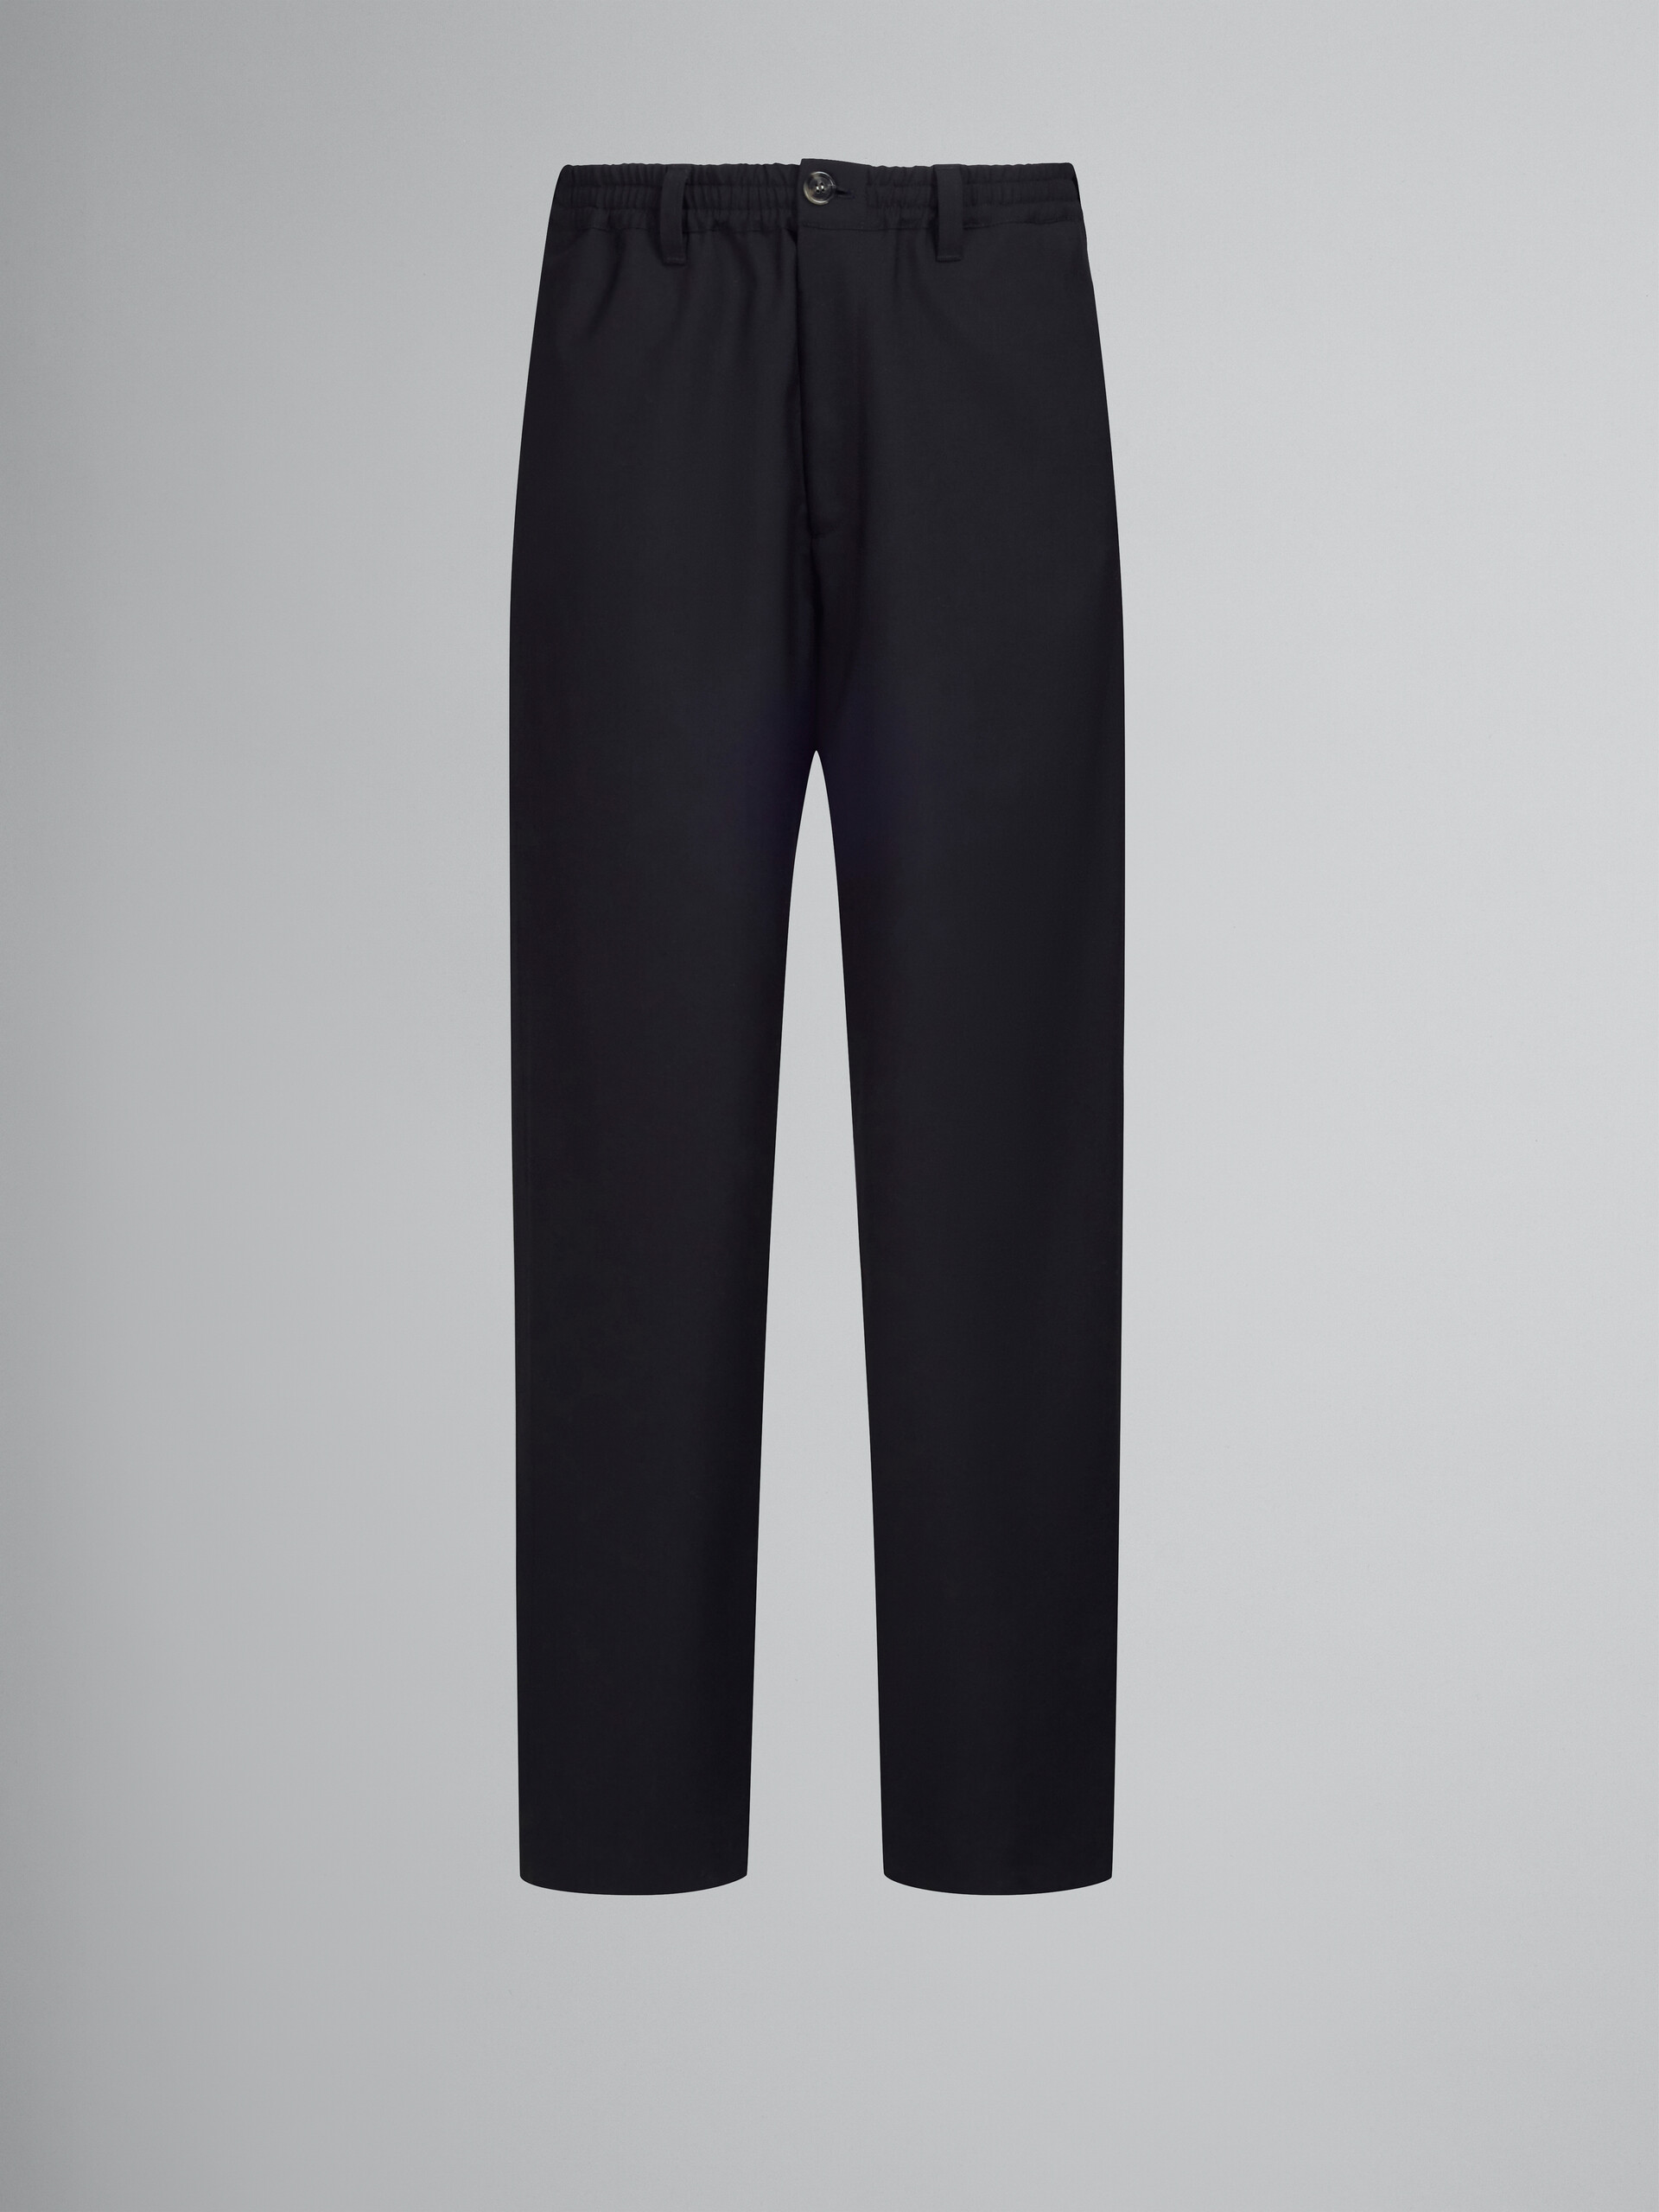 Schwarze Hose aus Tropenwolle - Hosen - Image 1